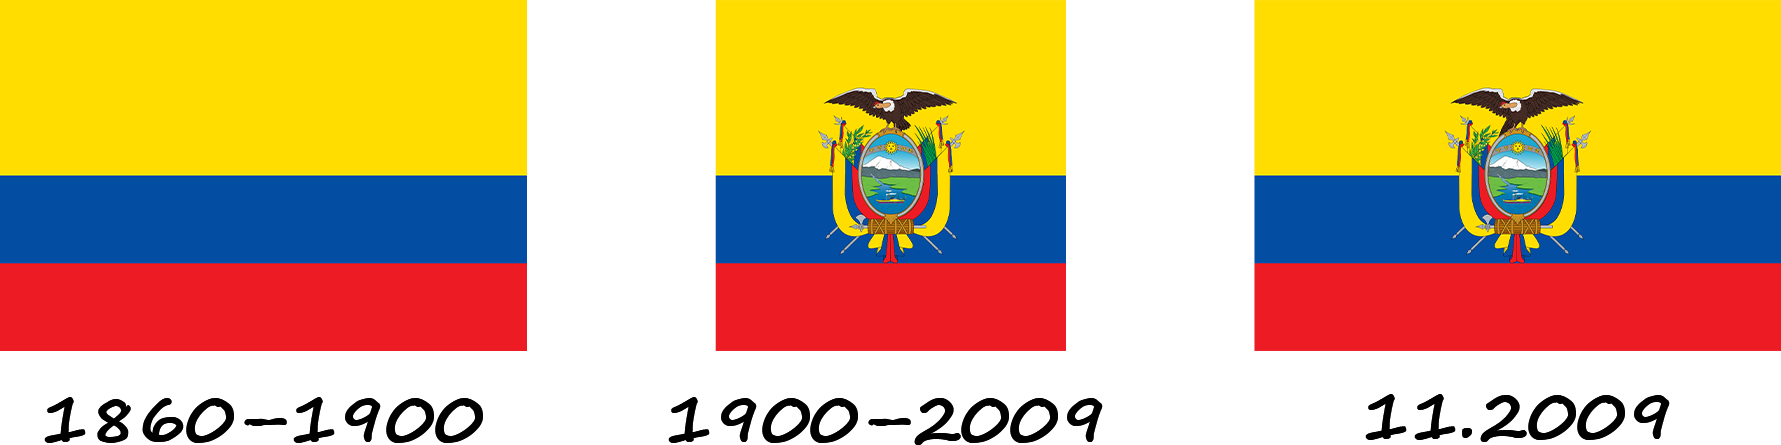 Історія прапору Еквадору